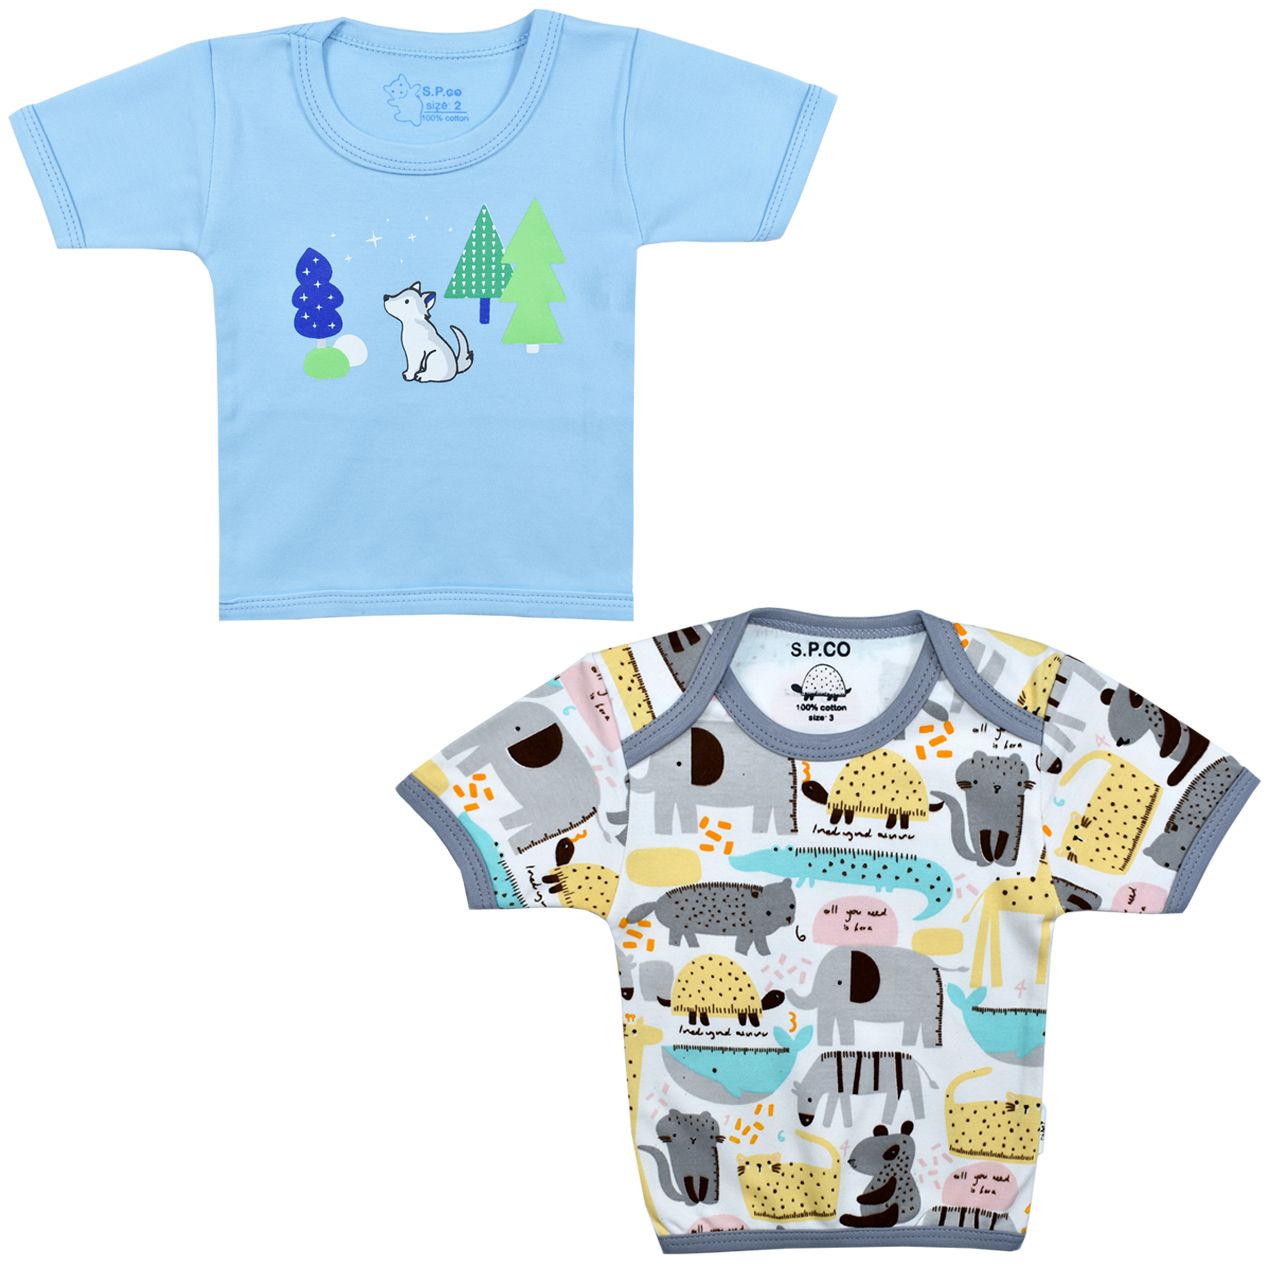 تی شرت آستین کوتاه نوزادی اسپیکو کد 301 -5 بسته دو عددی -  - 1